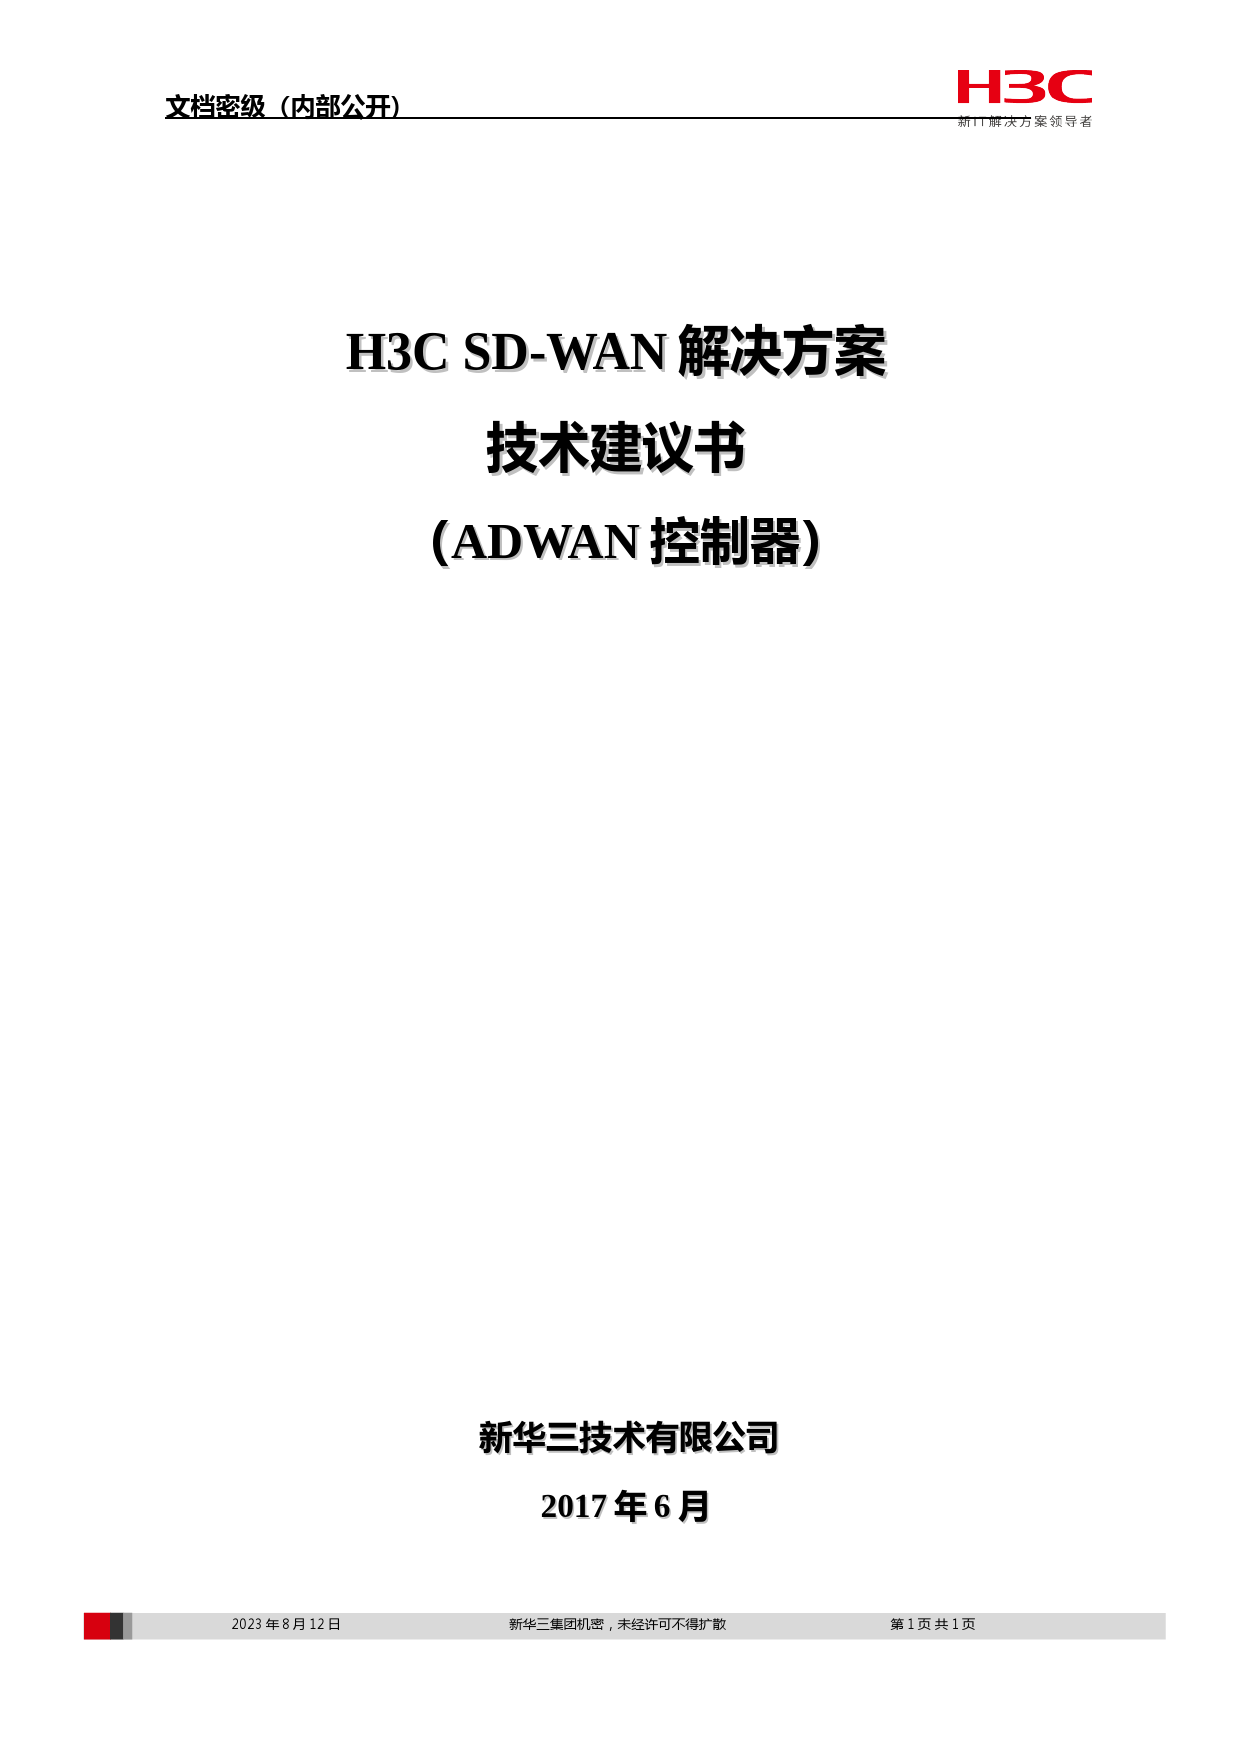 (完整版)H3CSD-WAN解决方案技术建议书v0607